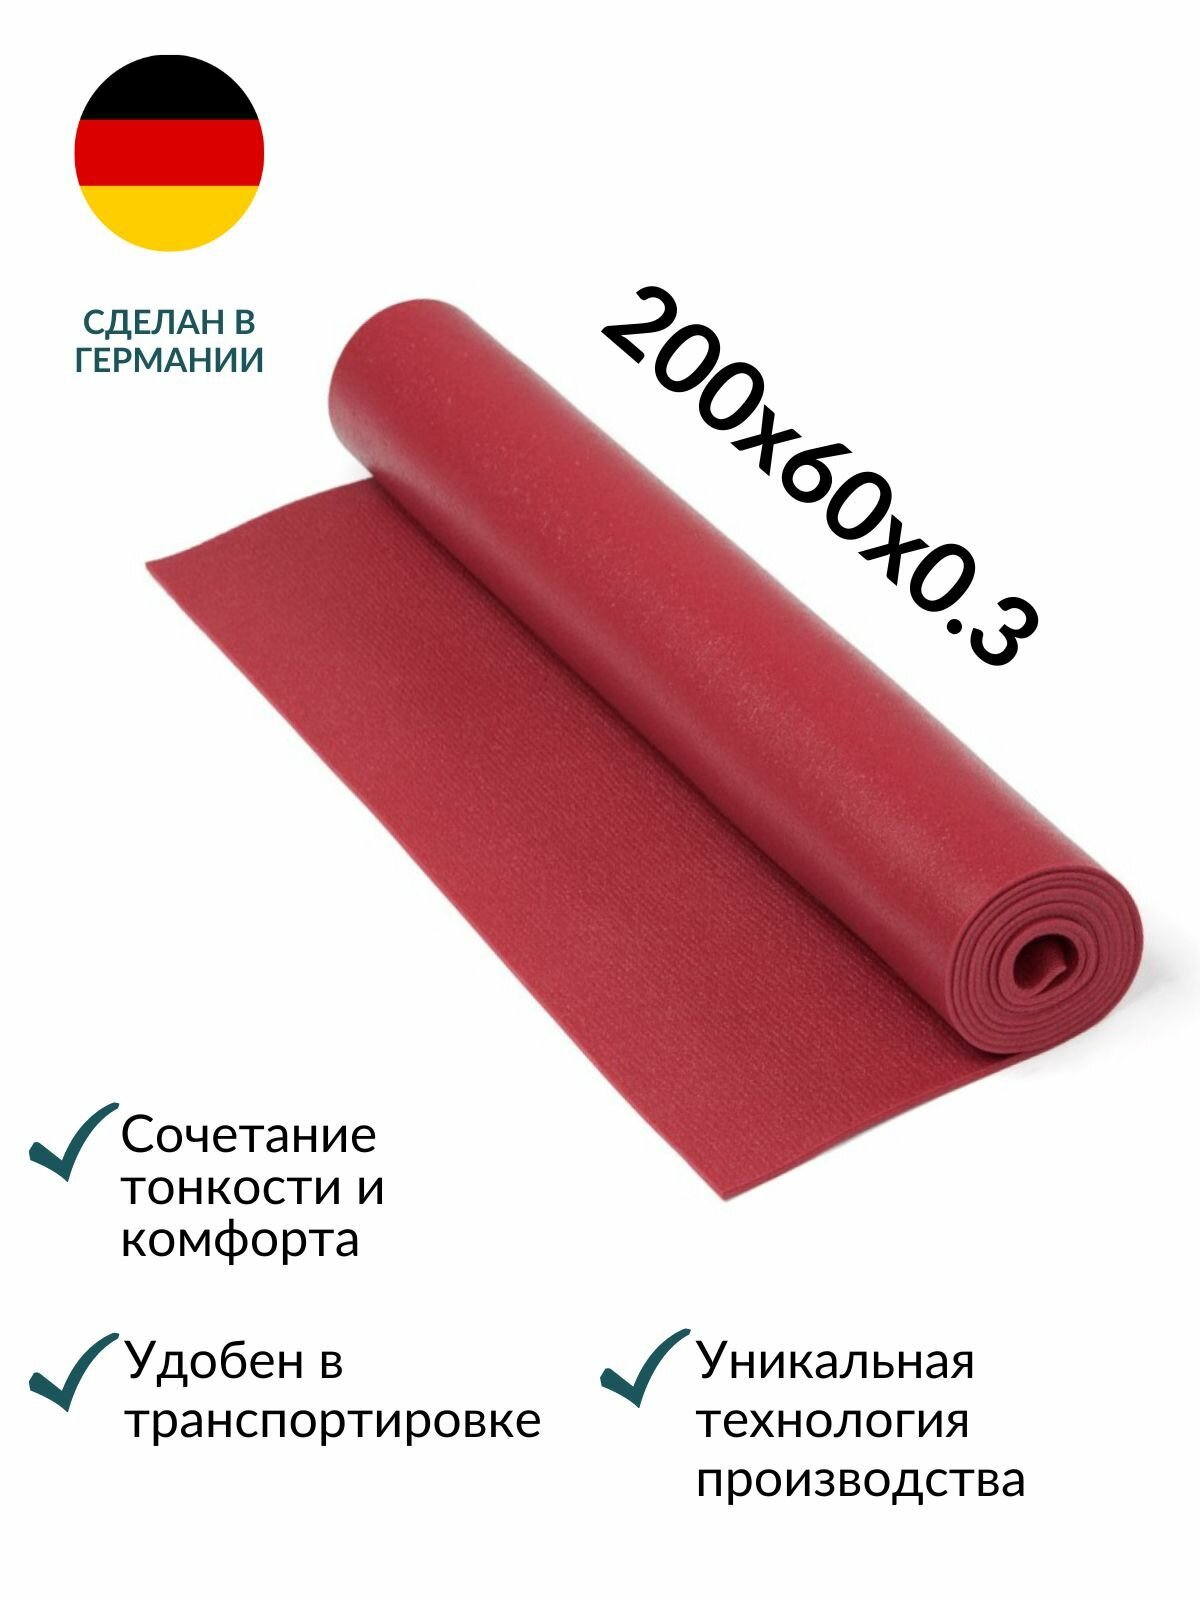 Коврик для йоги Yogastuff Кайлаш бордовый 200*60 см, прочный, нескользящий